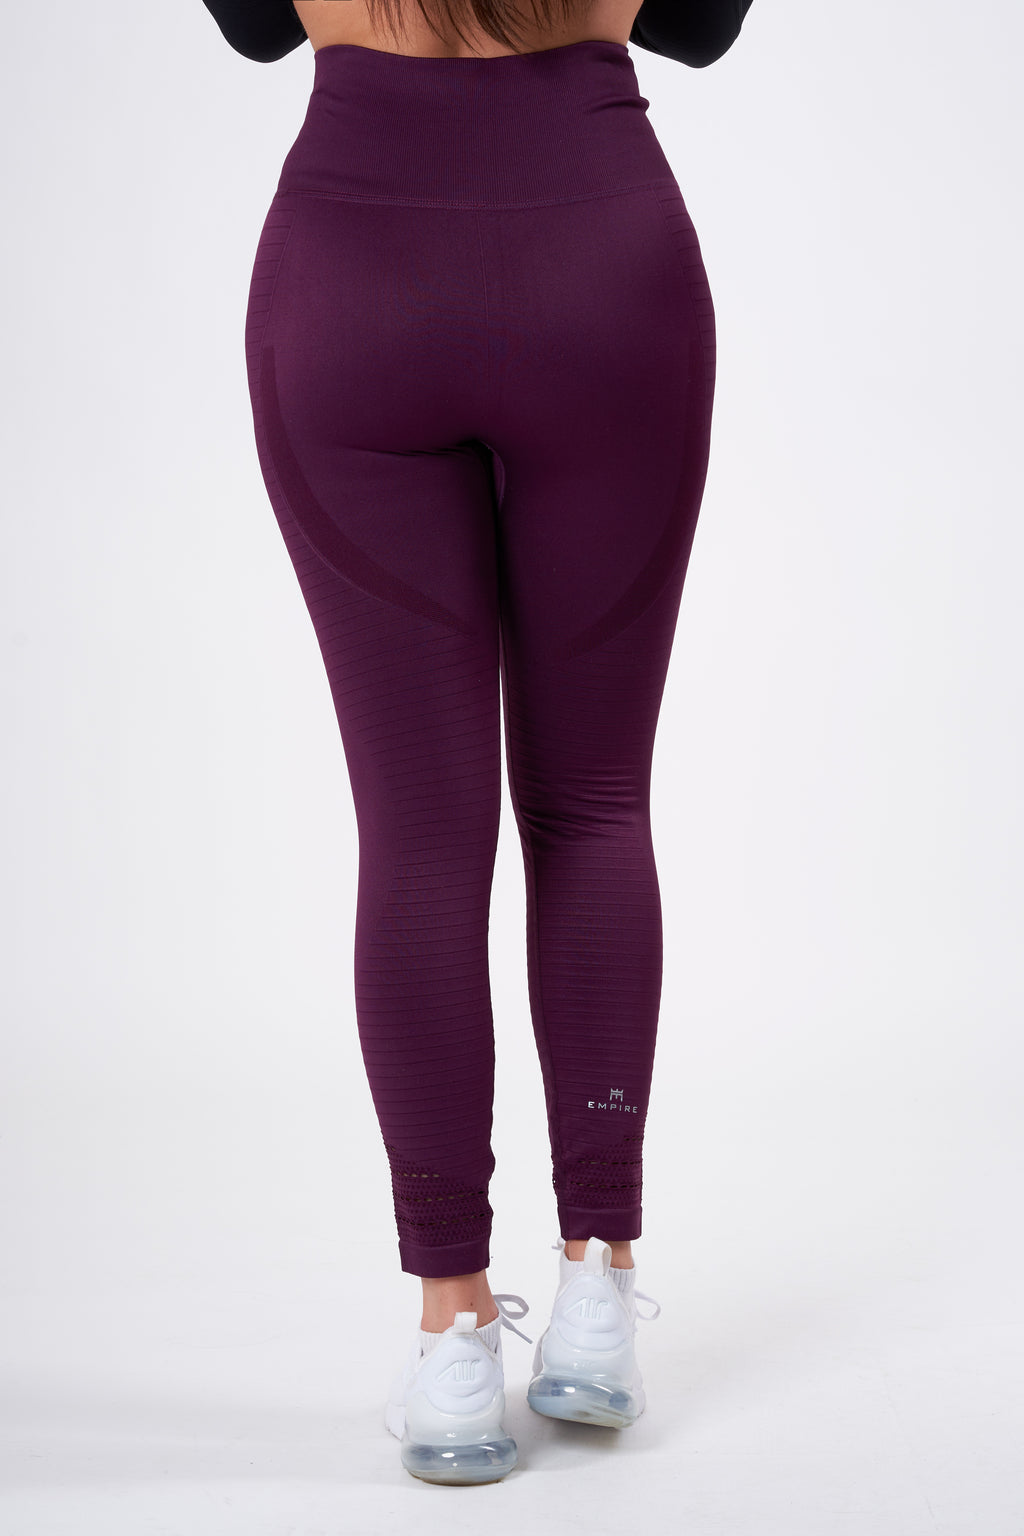 M) RBX Dark Purple Crop Leggings Womens – Revived Clothing Exchange